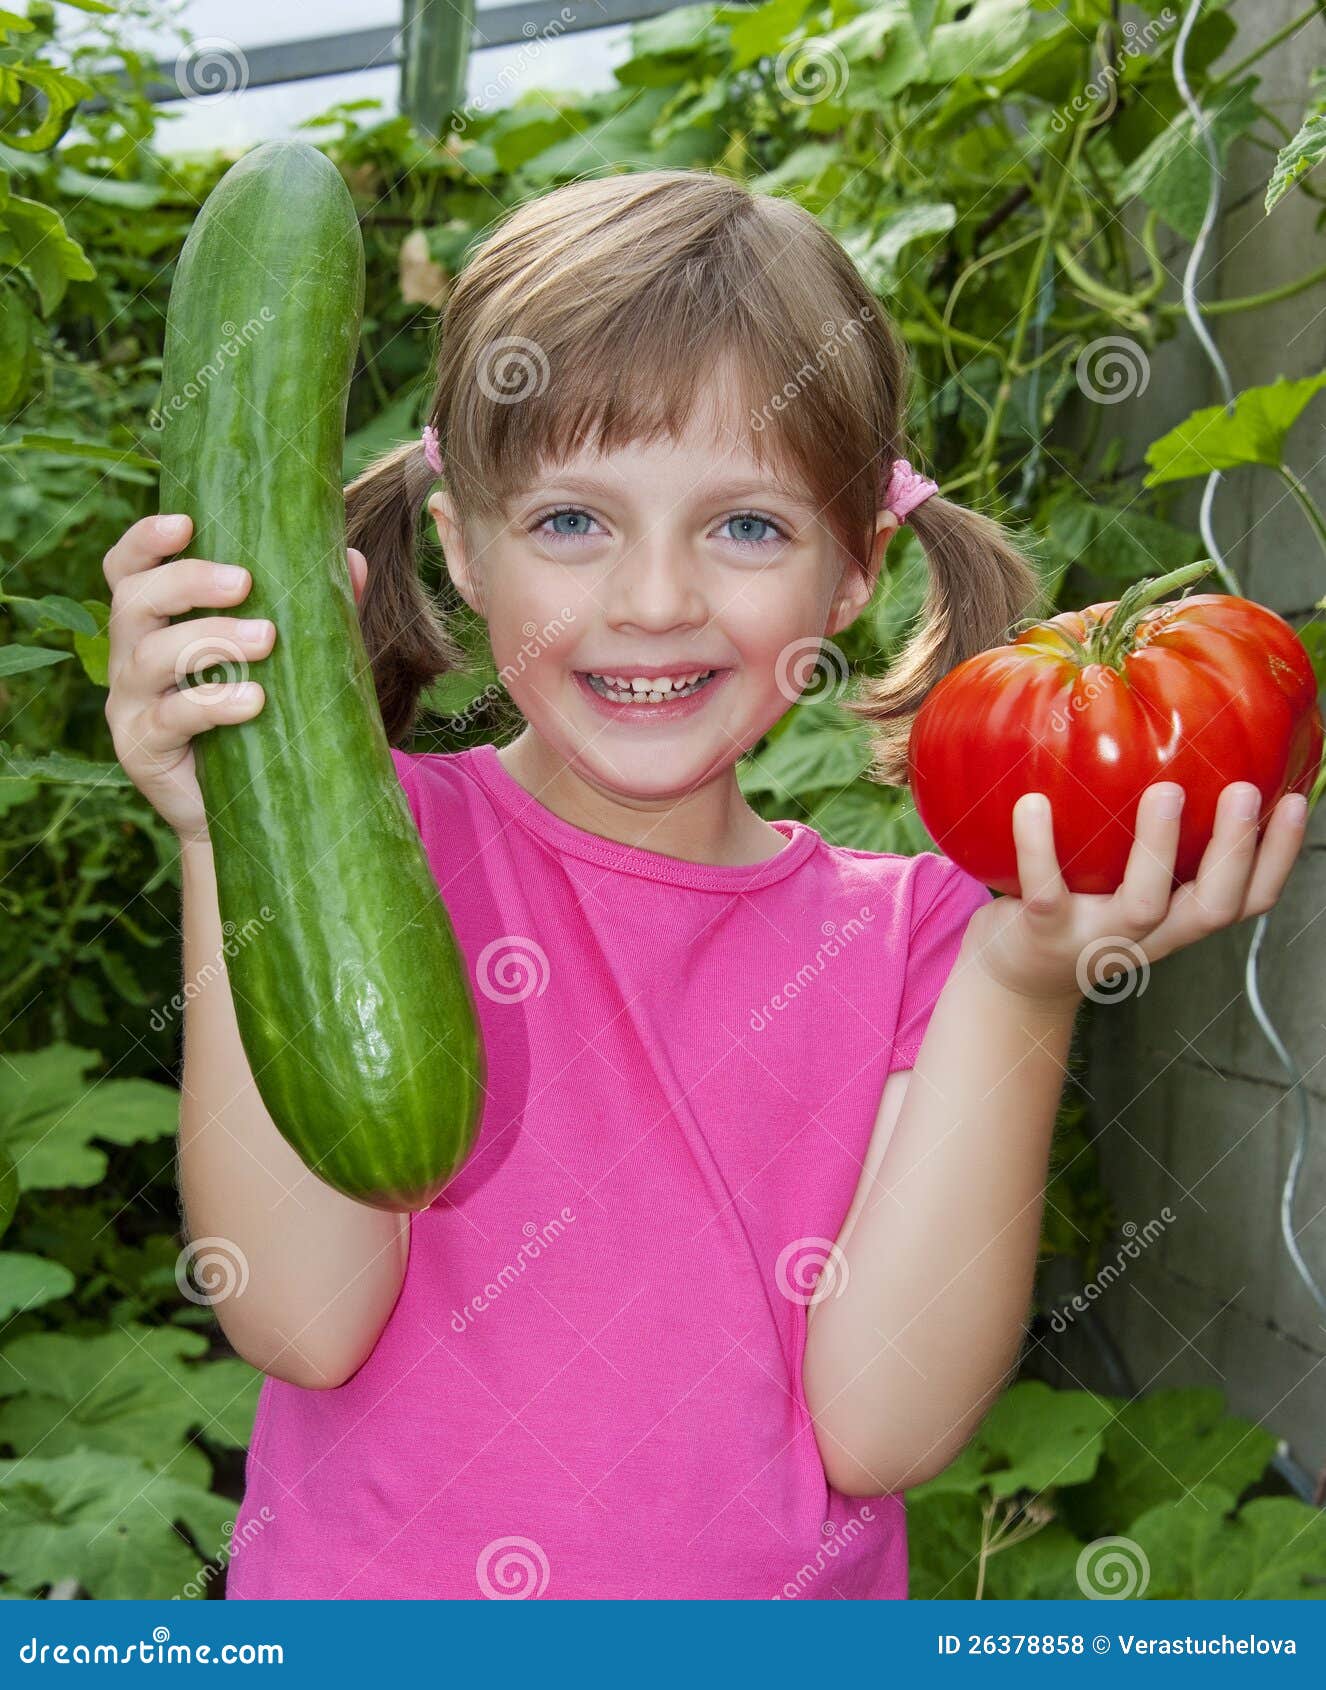 Little Girl Holding Vegetables Stock Photo - Image of caucasian, joyful